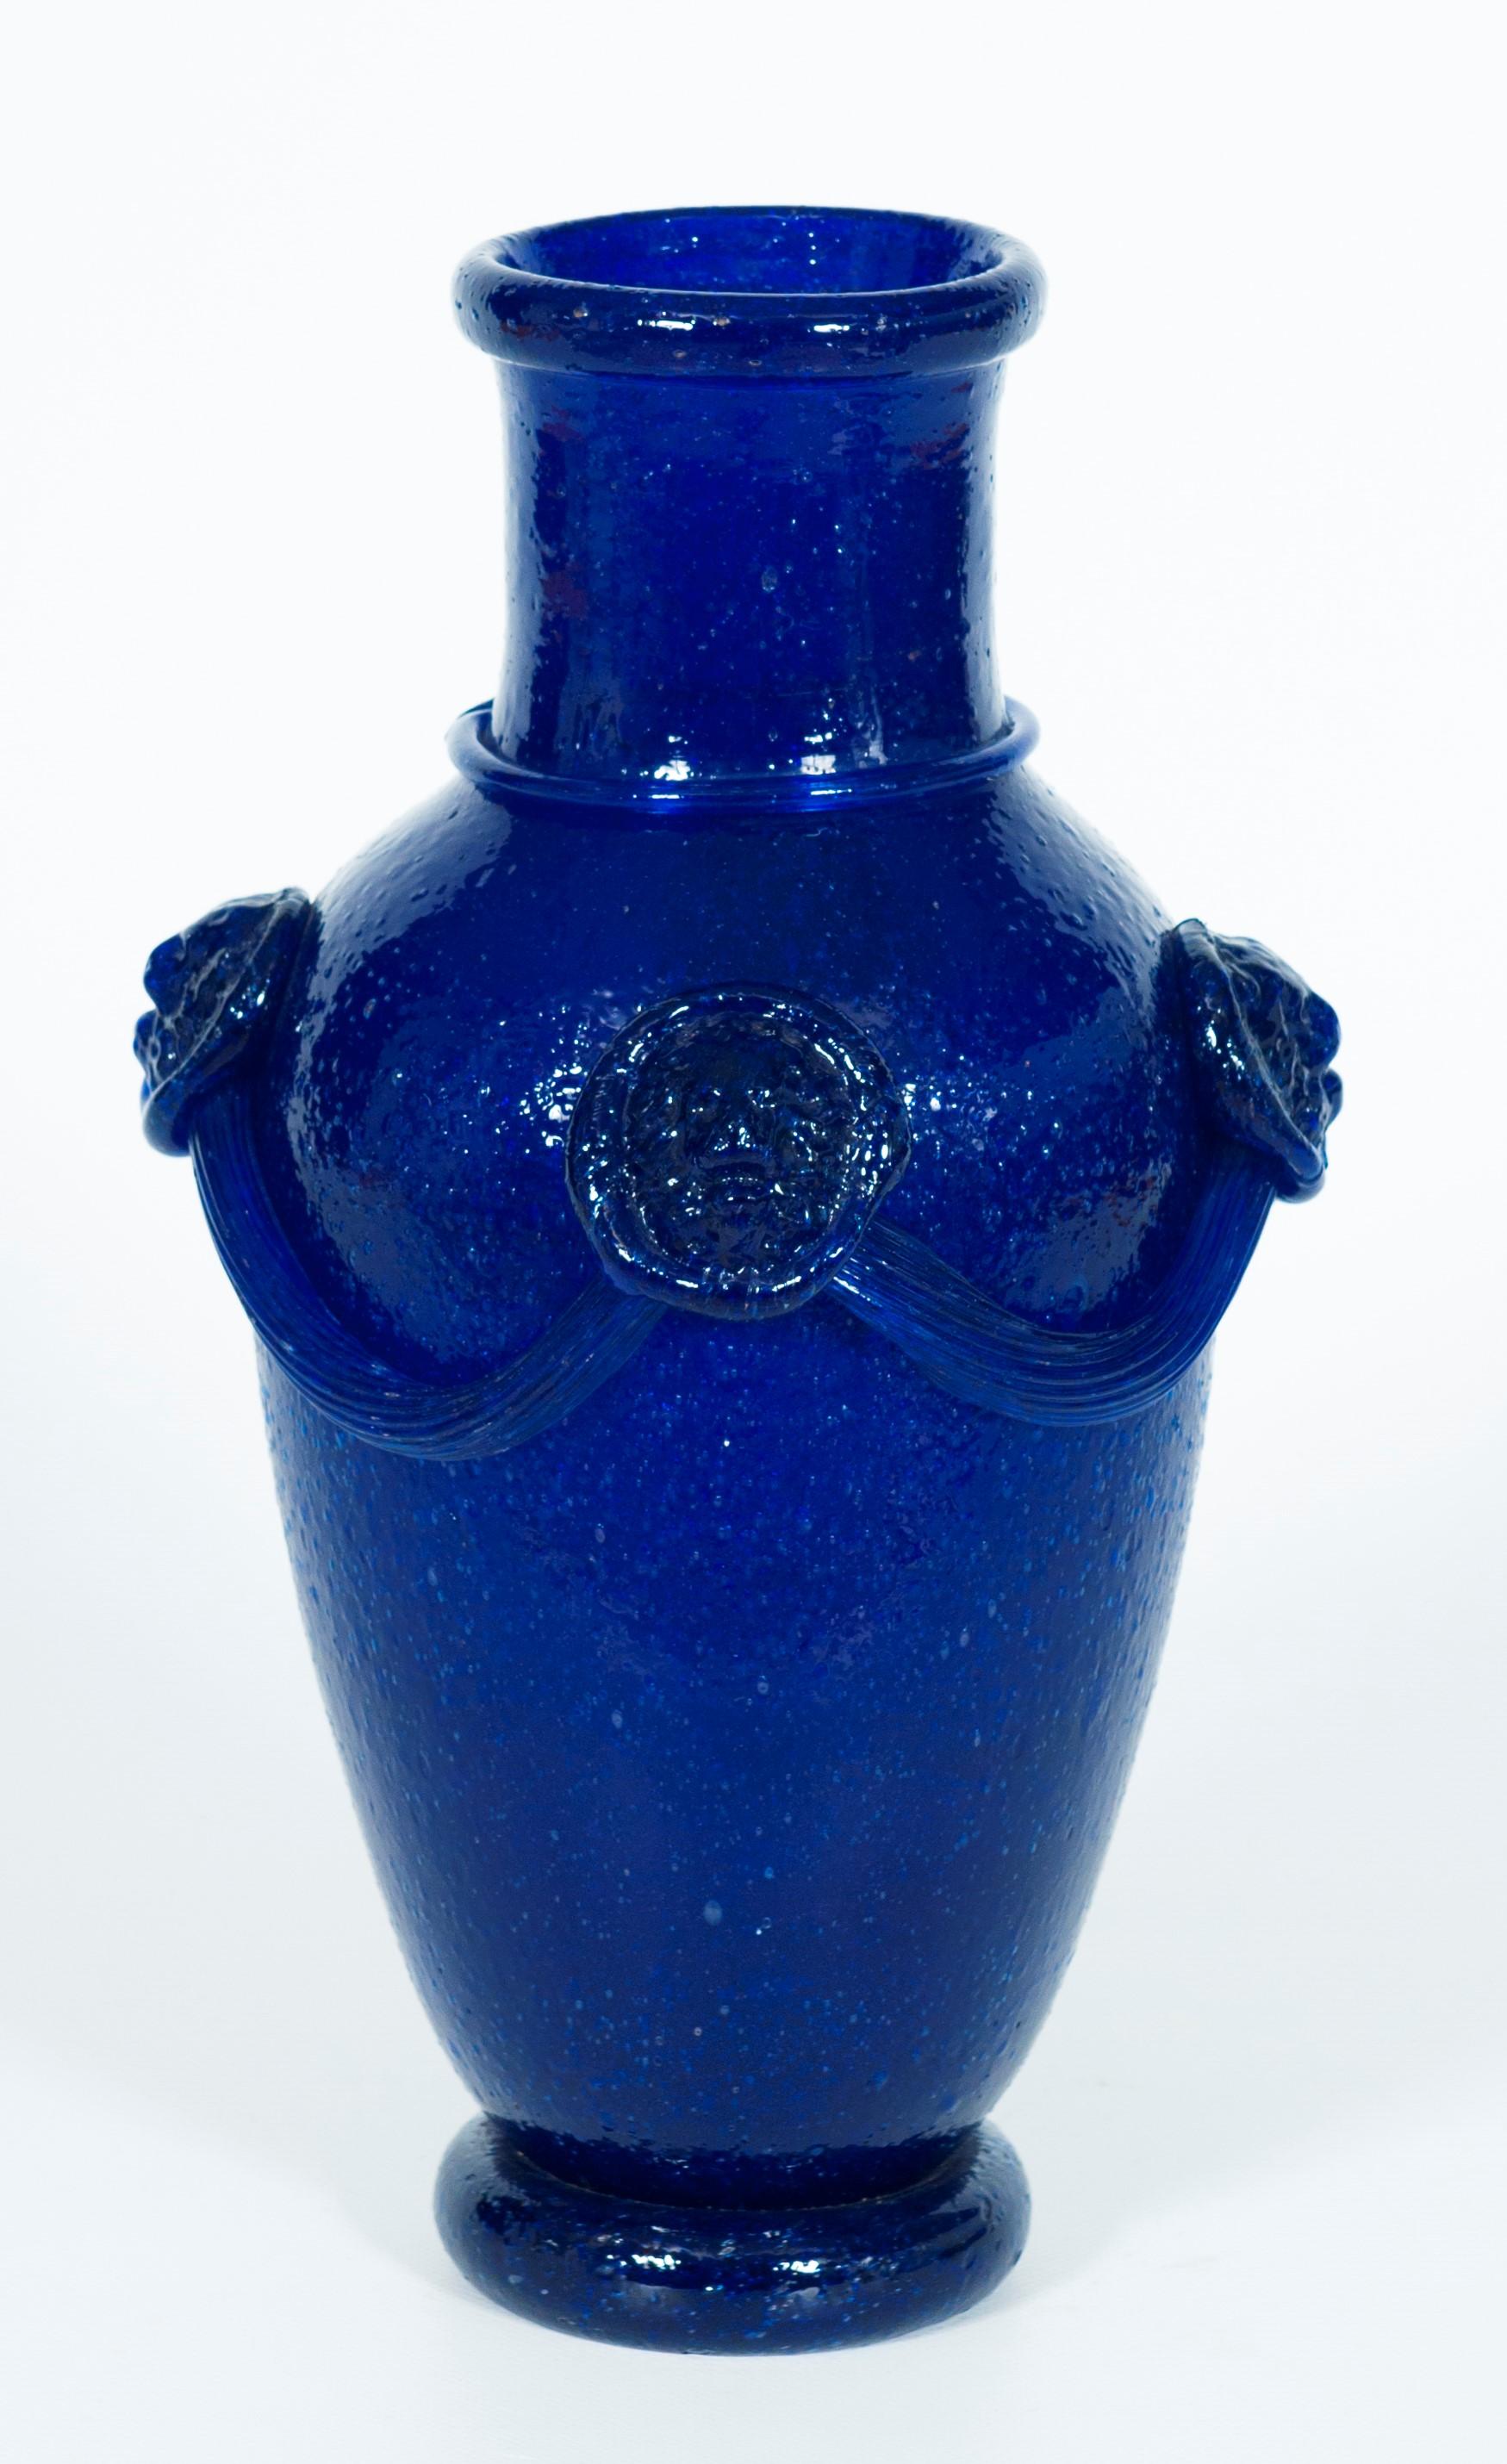 Vase bleu massif en verre soufflé de Murano Pulegoso attribué à Martinuzzi, années 1950.
Ce vase vénitien unique en verre soufflé de Murano a été fabriqué avec un procédé spécial, appelé Pulegoso, qui consiste à faire bouillir la pièce pour obtenir